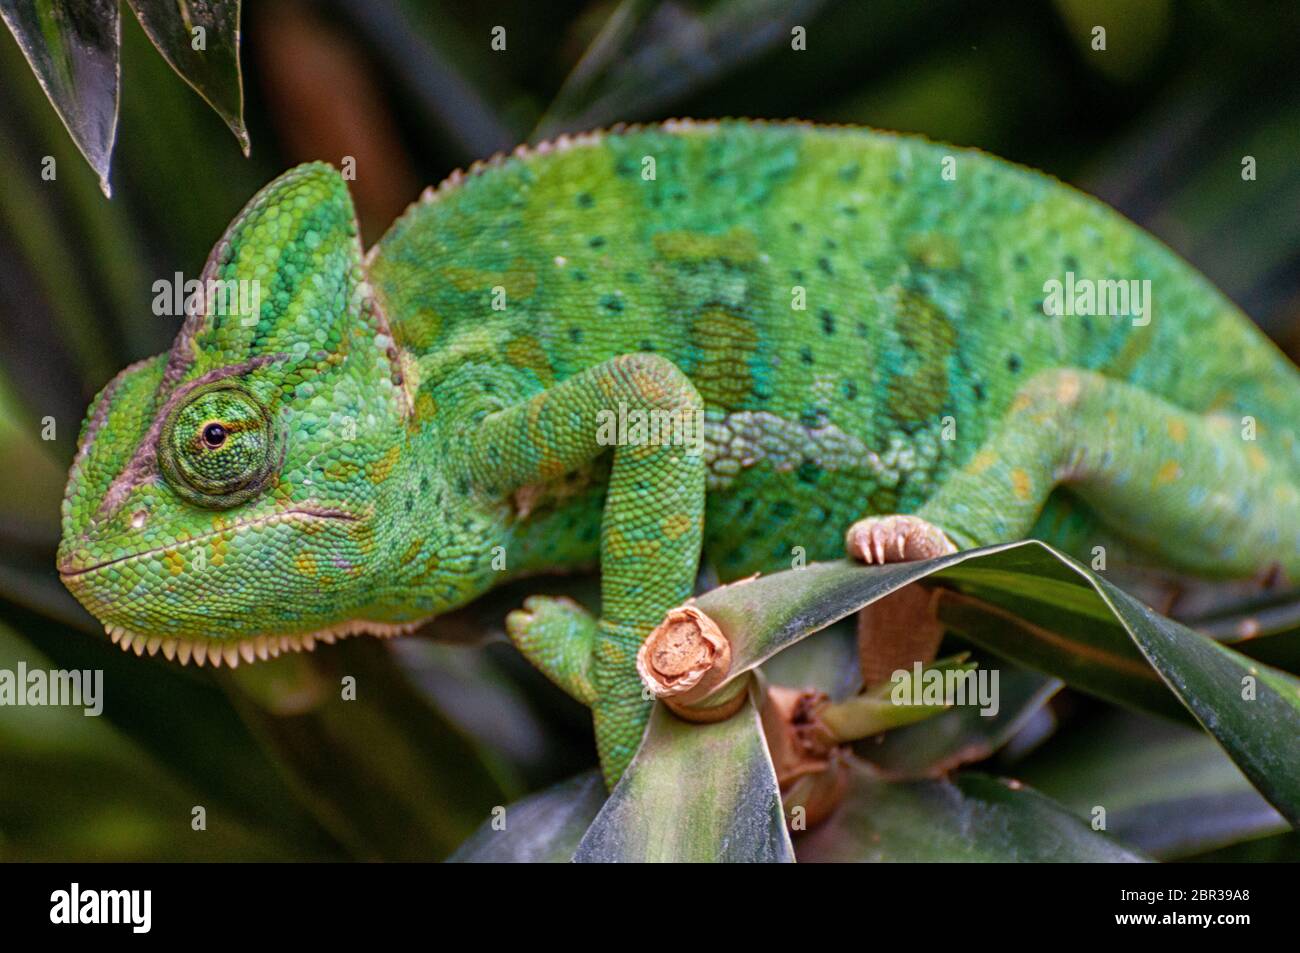 une panthère verte chameleon sur une feuille Banque D'Images